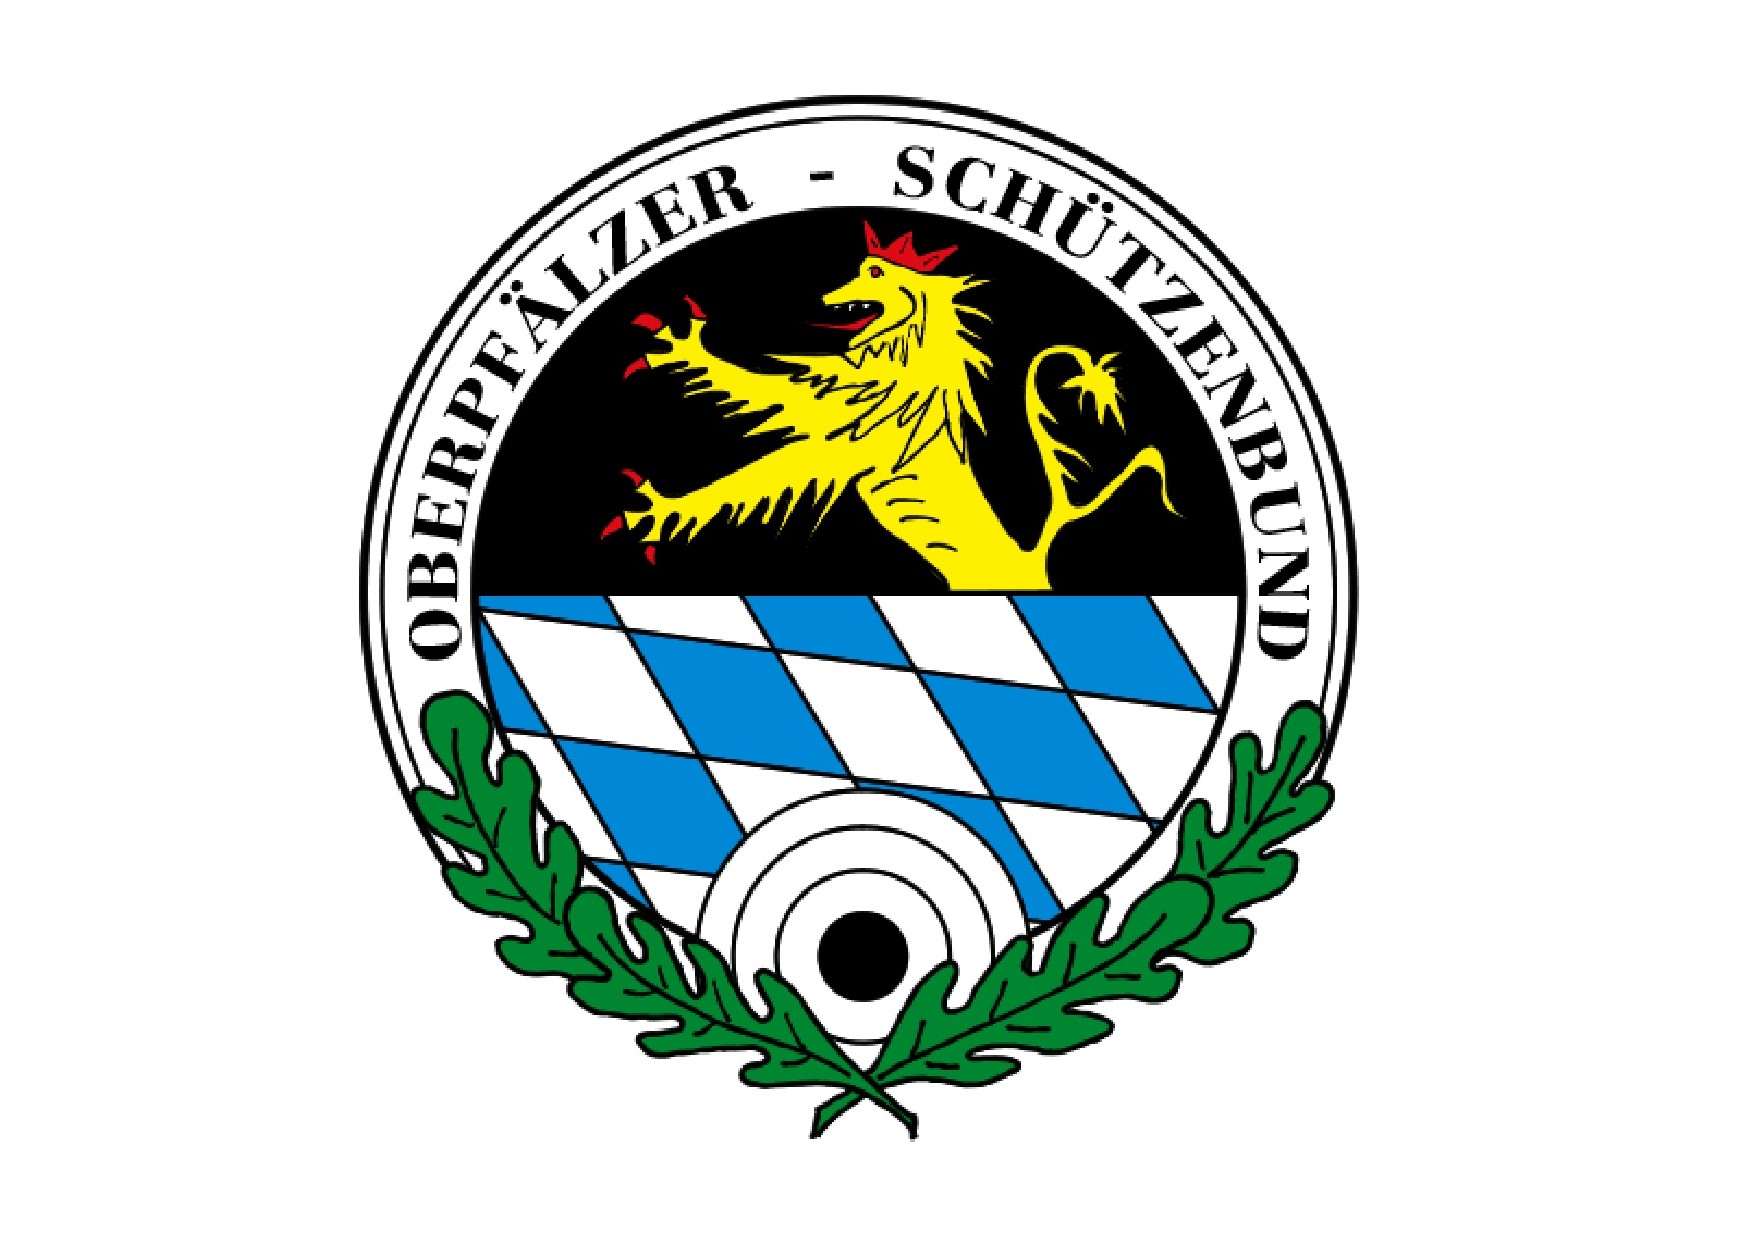 OSB Logo